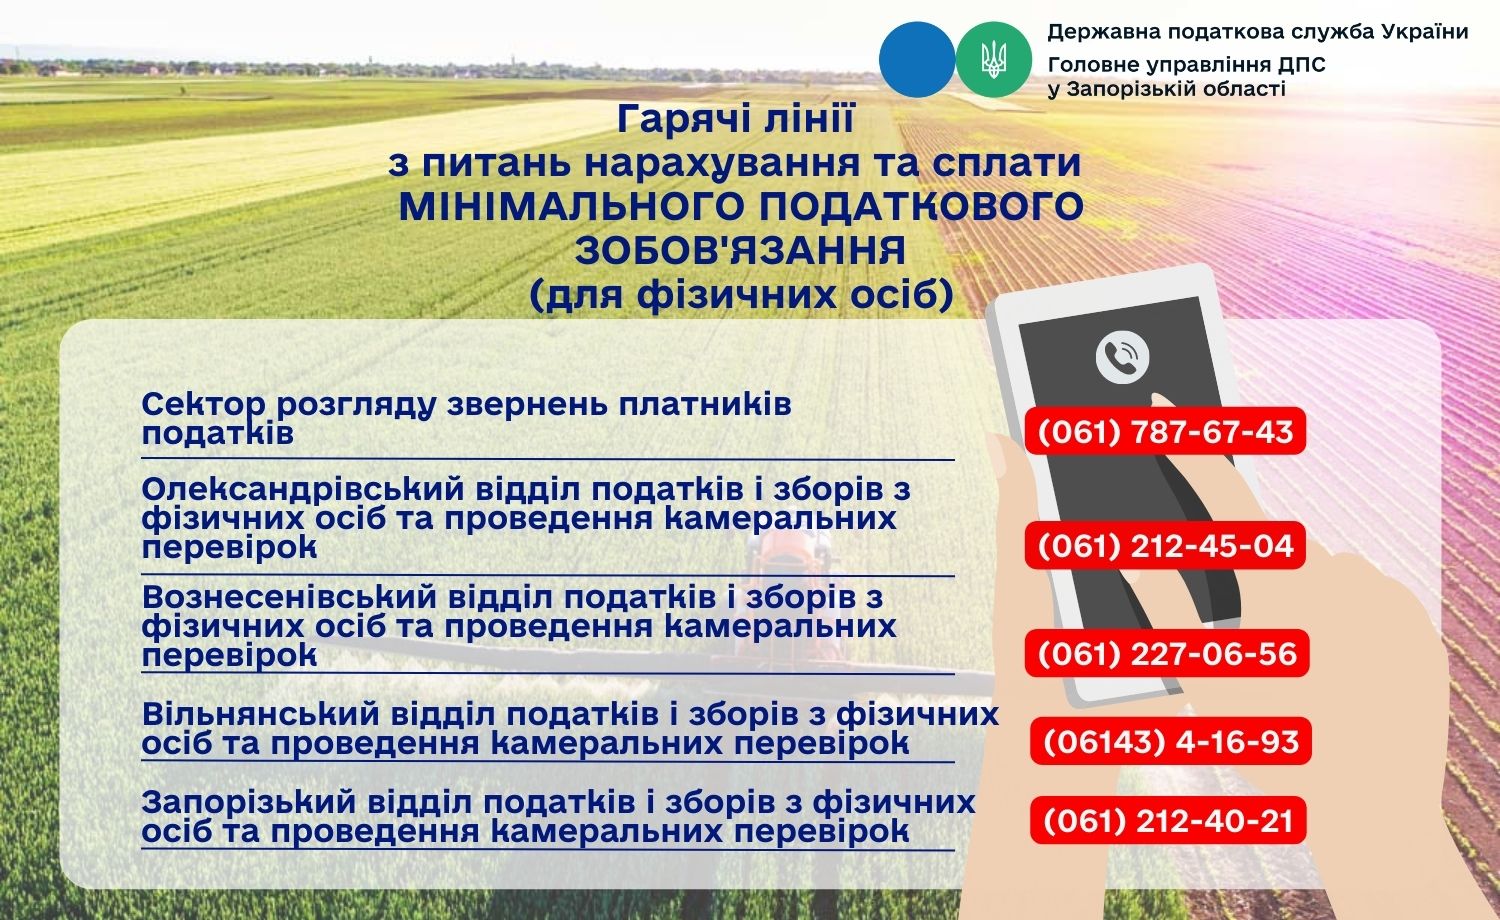 До уваги фізичних осіб! В Головному управлінні ДПС у Запорізькій області працюють гарячі лінії з питань нарахування та сплати Мінімального податкового зобов'язання.